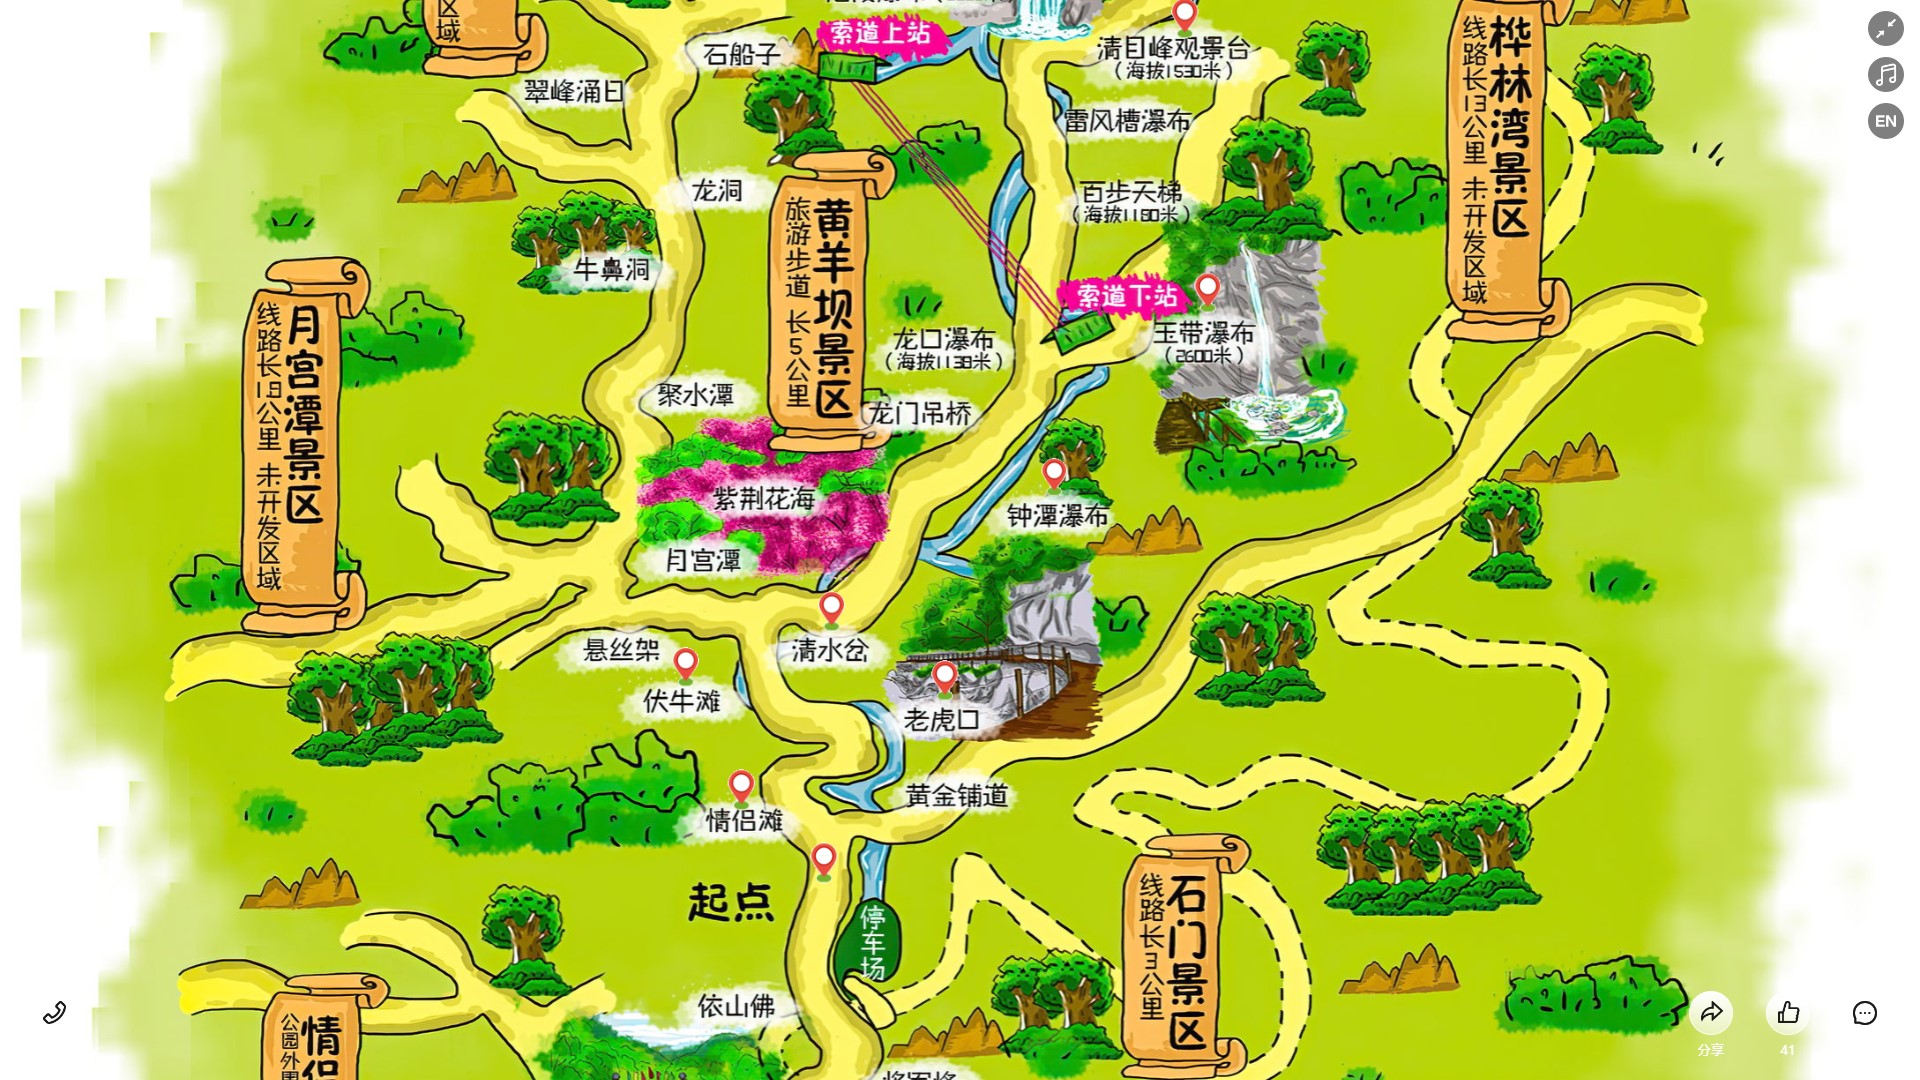 加茂镇景区导览系统